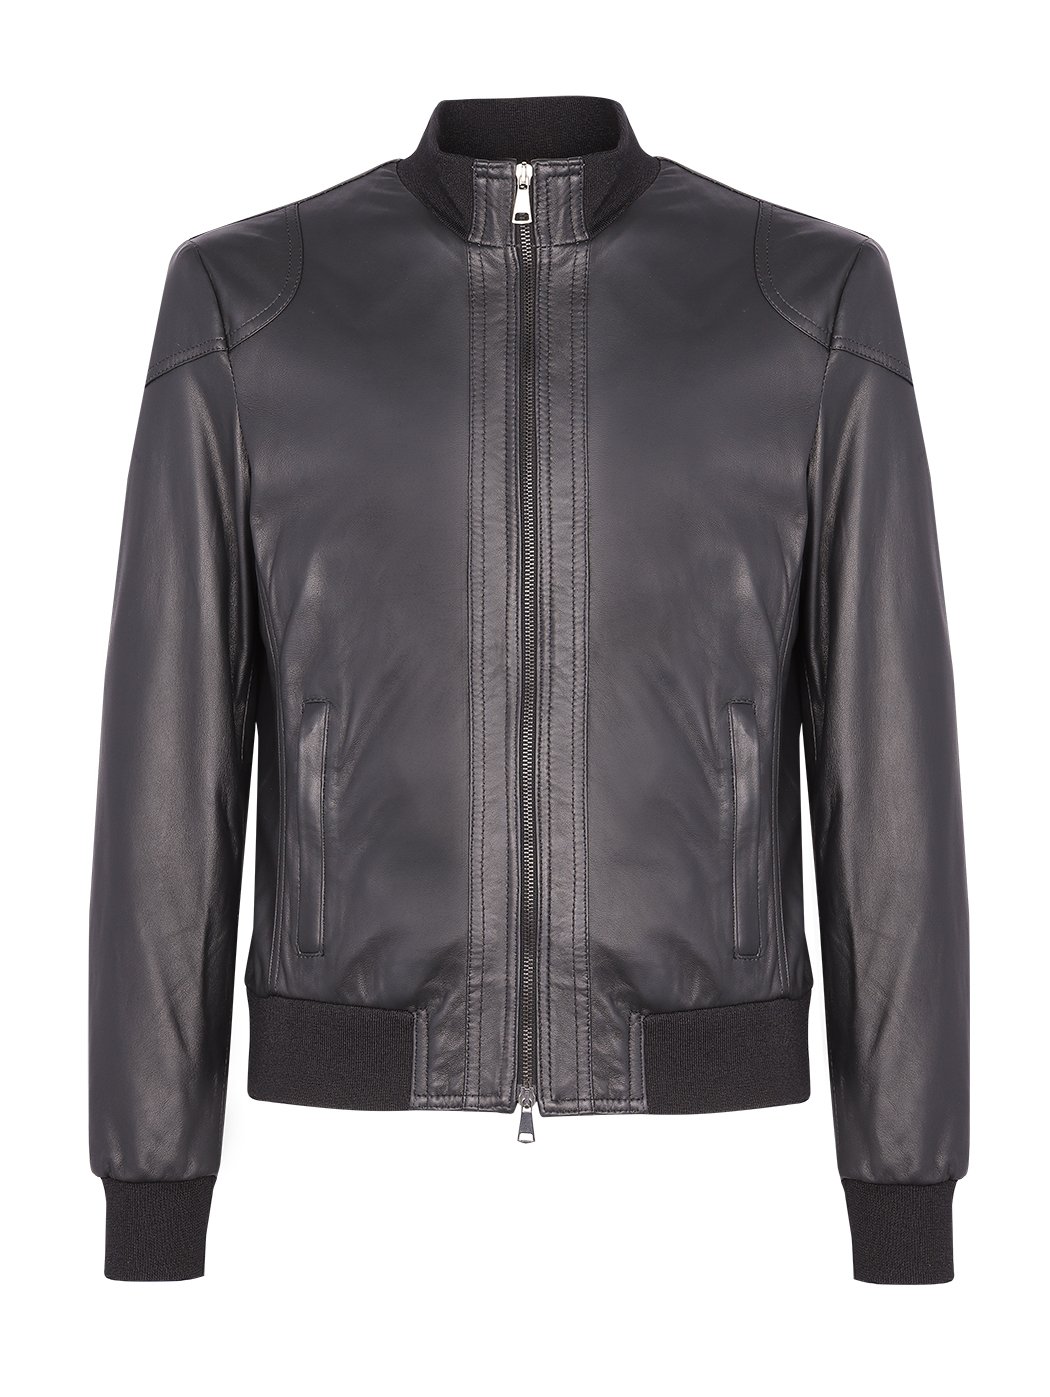 Classic Bomber Leather Jacket Black